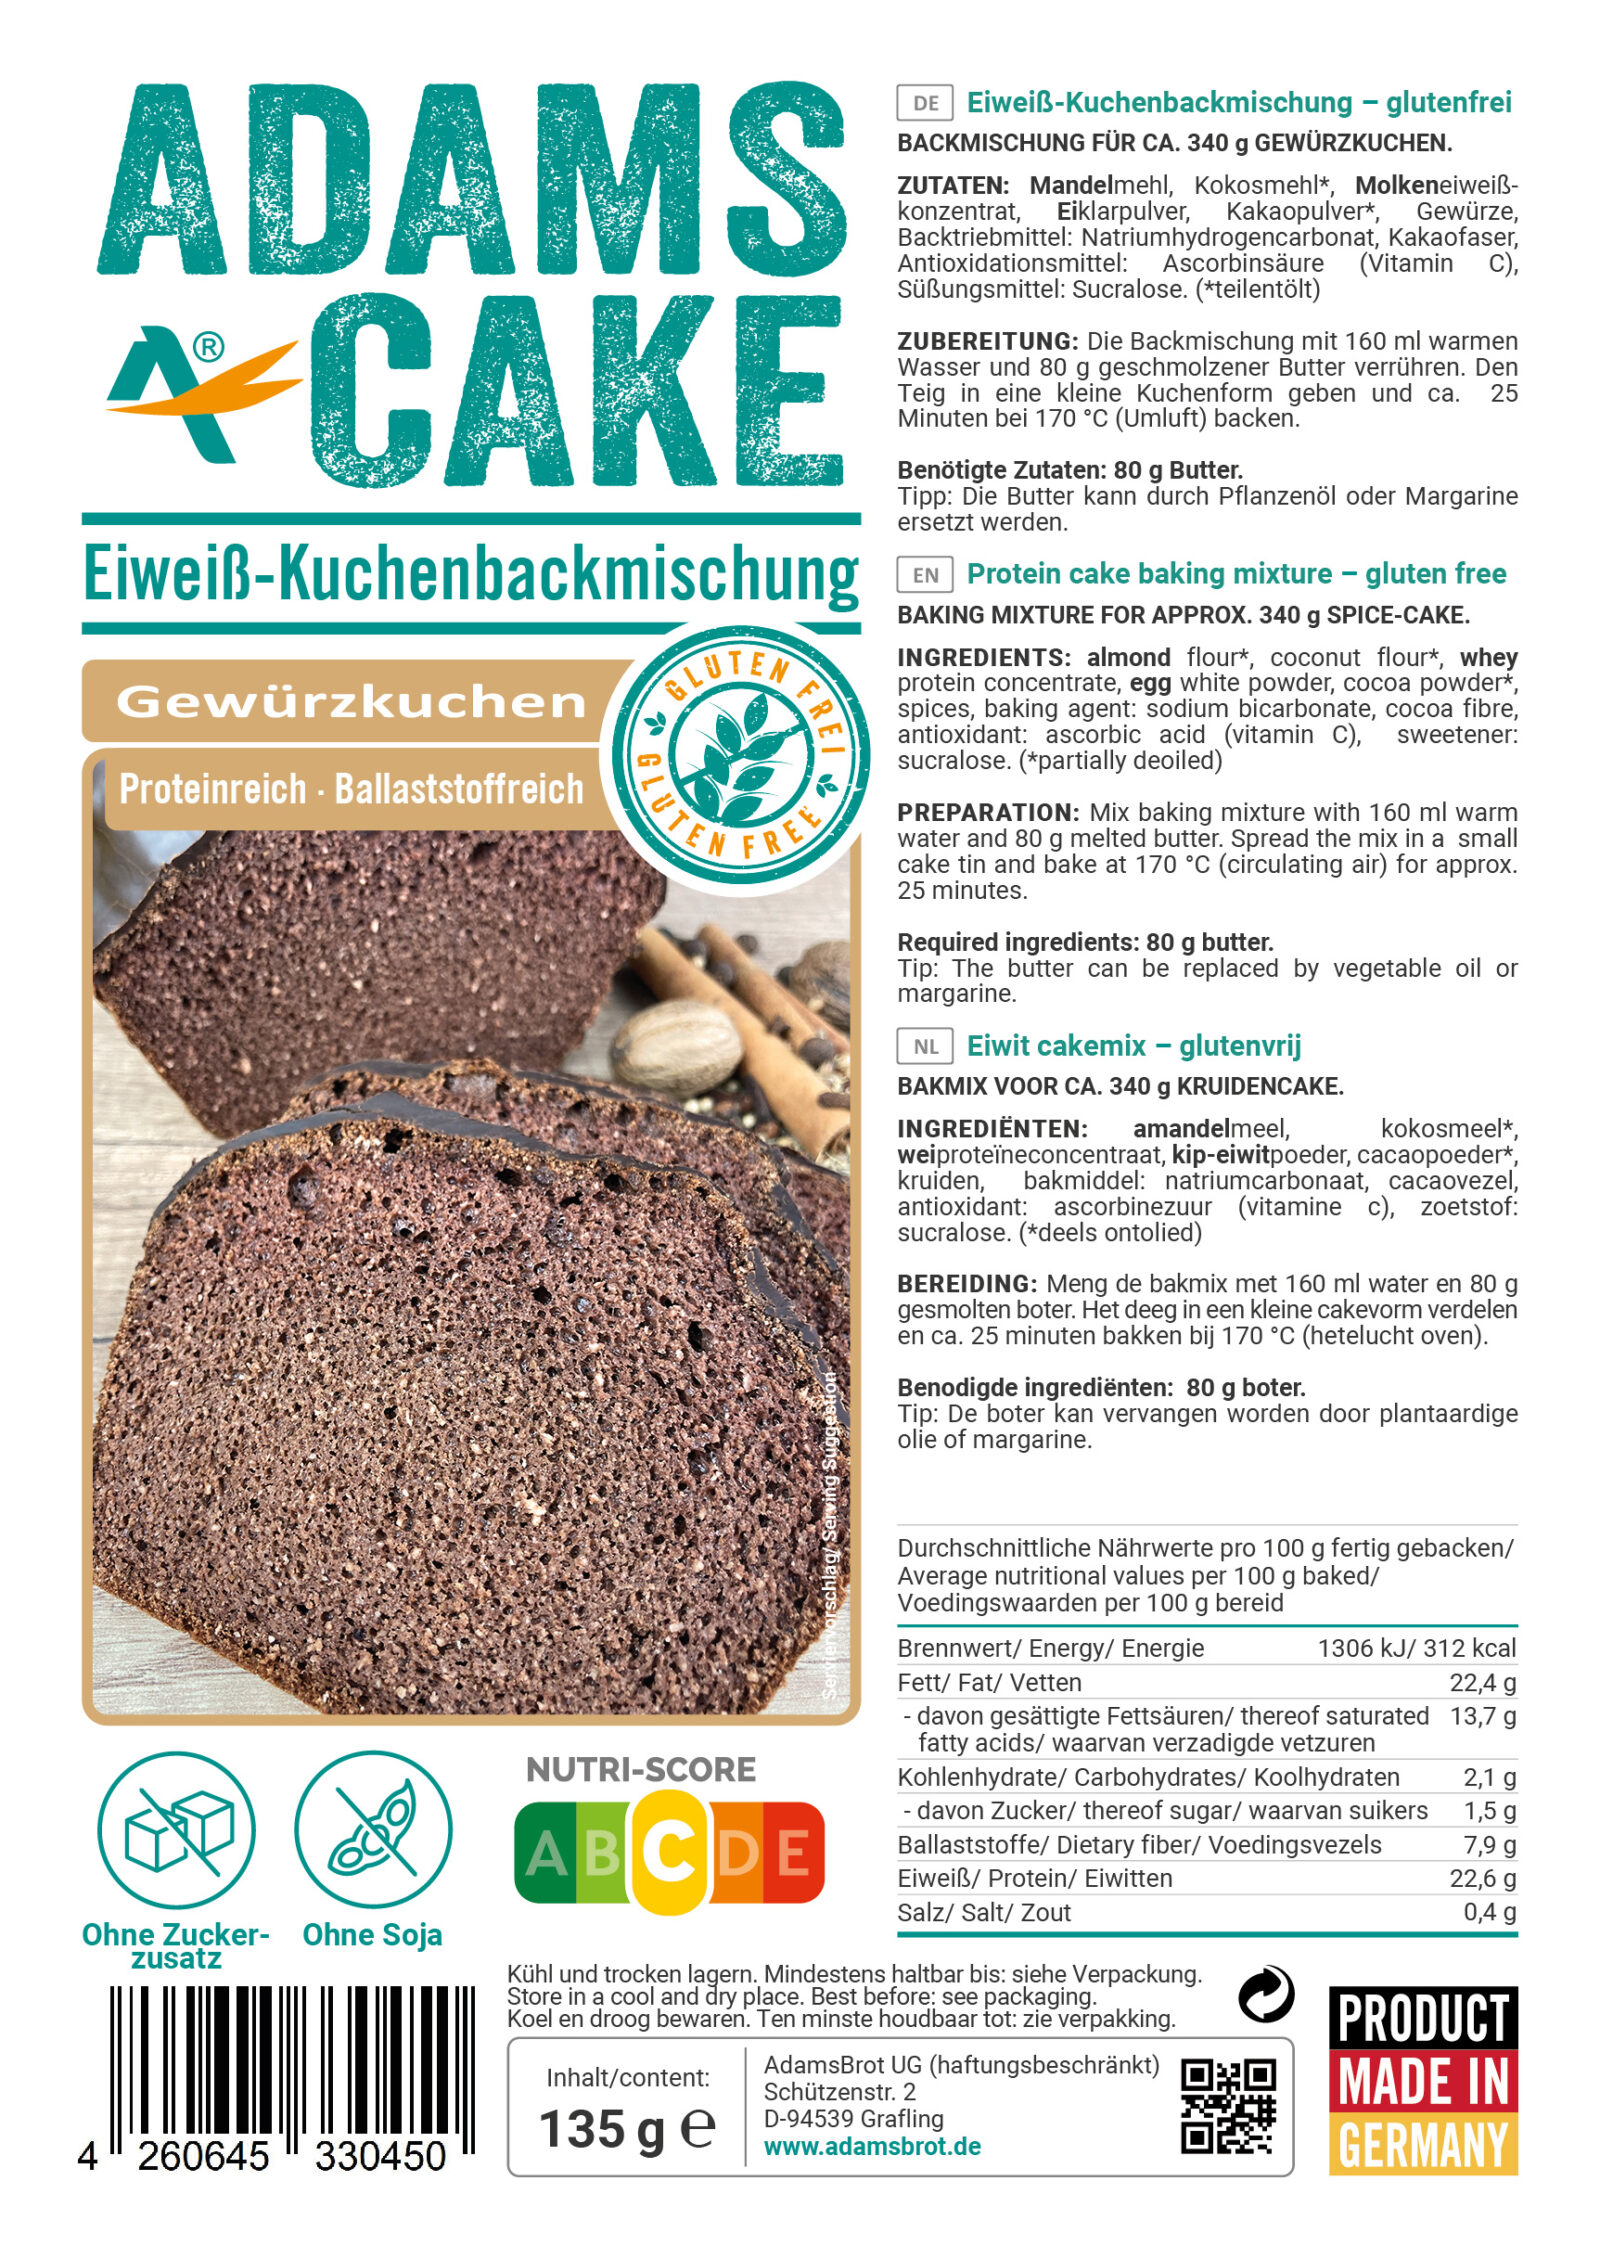 Bild des Etiketts von unserem glutenfreien, ketogenen und zuckerfreien Produkt, mit dem Namen "Kuchen Backmischung Gewürzkuchen"